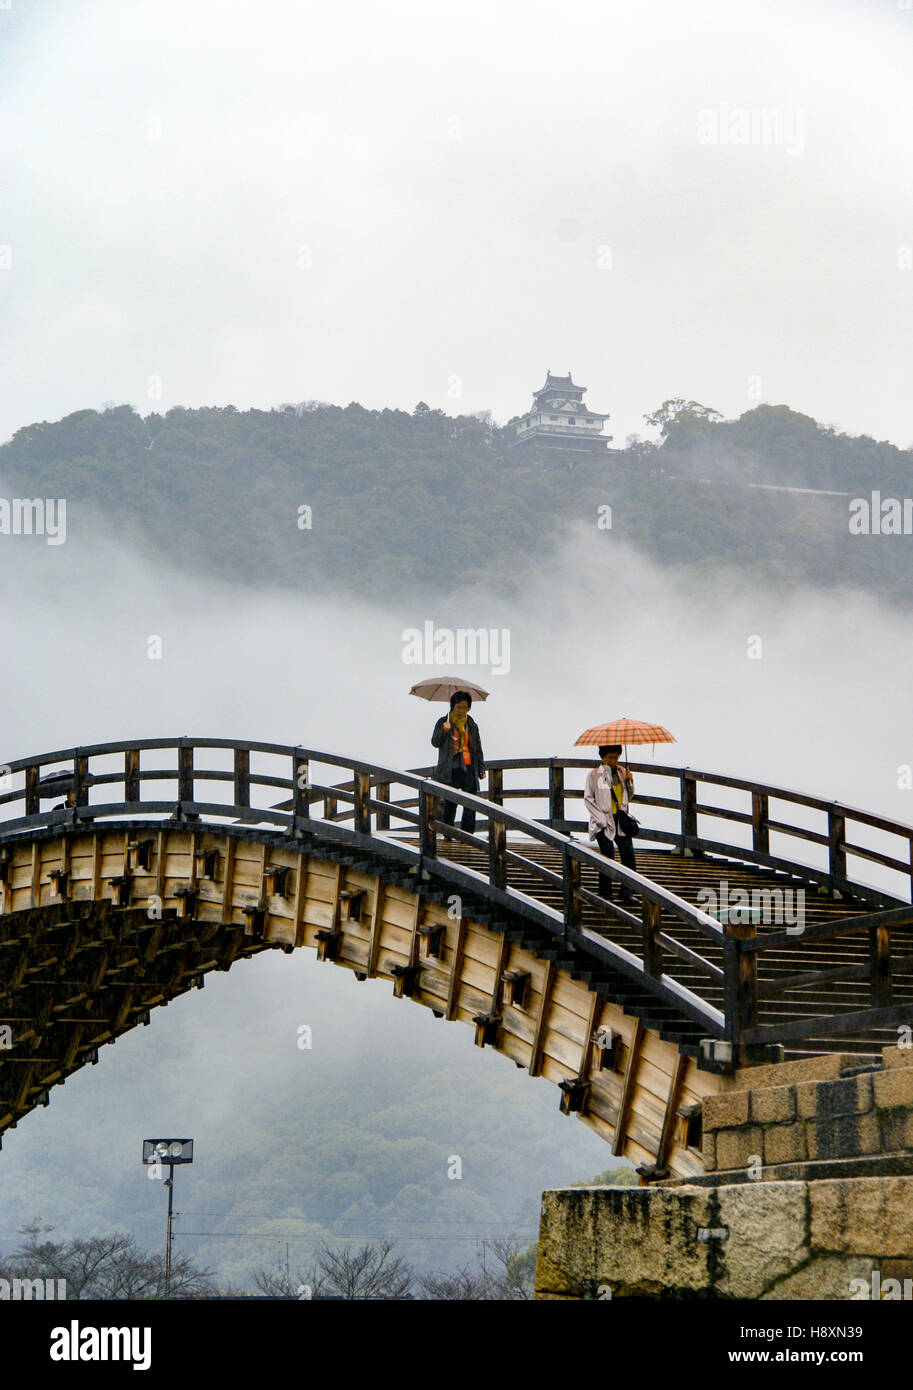 Ce magnifique pont voûté traditionnel classique au Japon est le Kintai Bridge, ou Kintaikyo. Banque D'Images